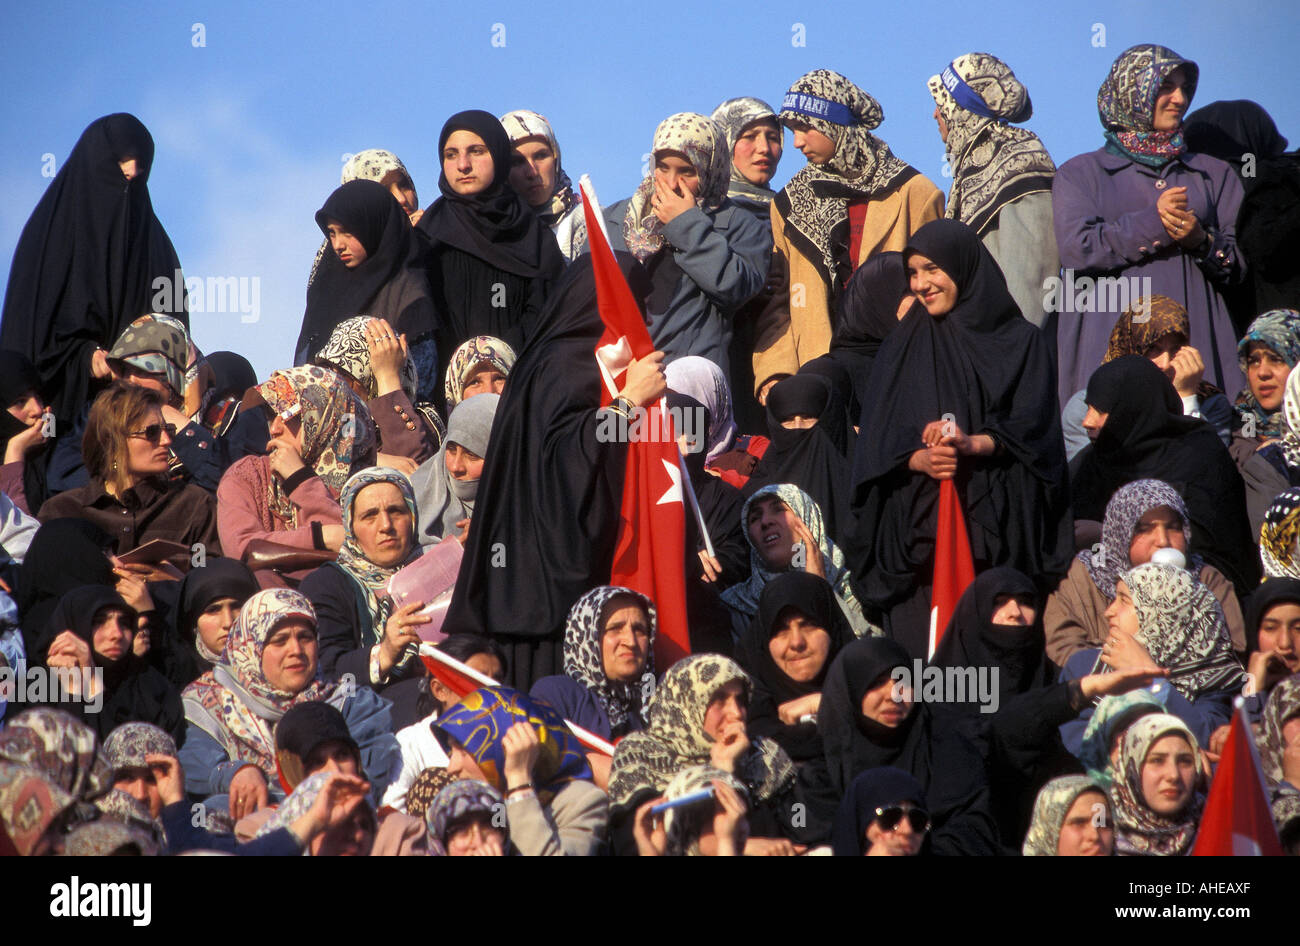 Verschleierte islamische Frauen in religiösen Partei treffen, Istanbul Türkei. Stockfoto